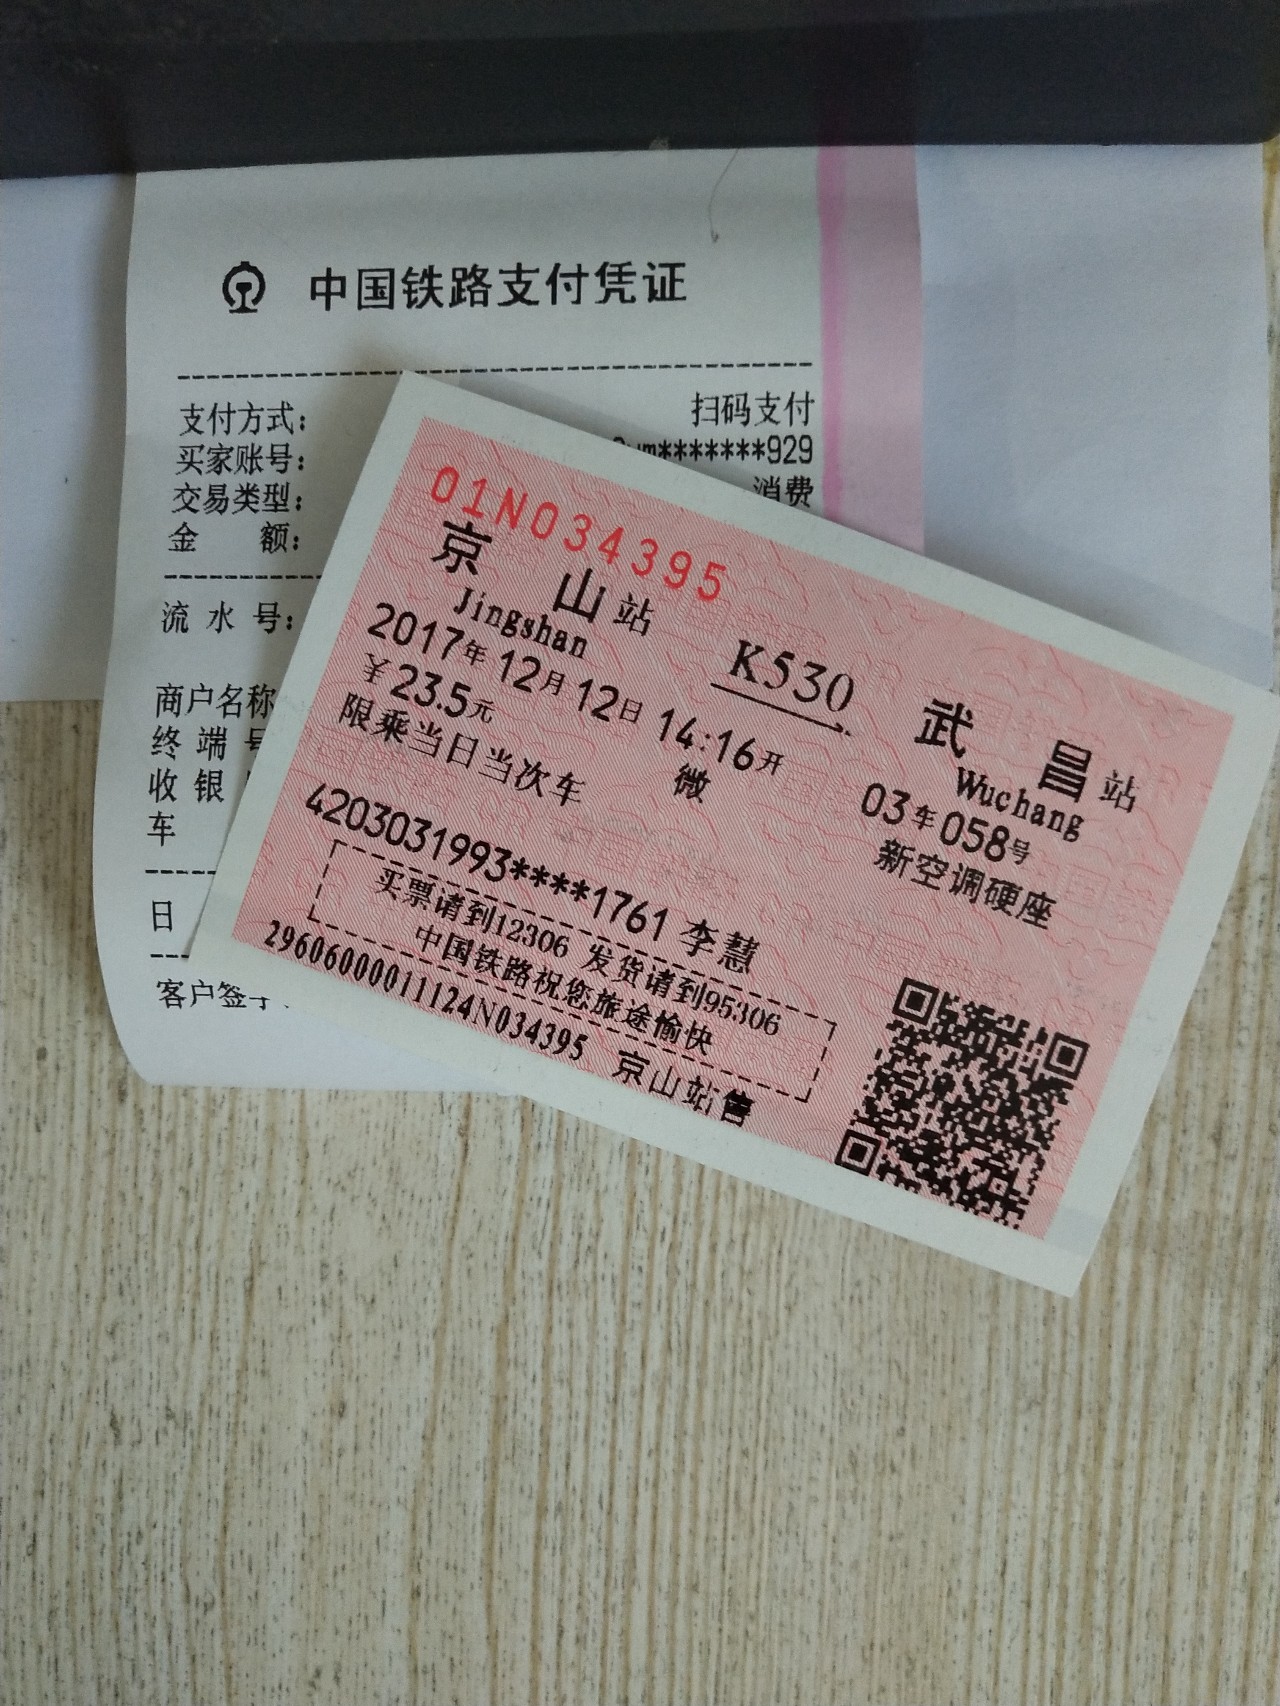 即日起京山火车站售票窗口可以使用微信购买火车票啦